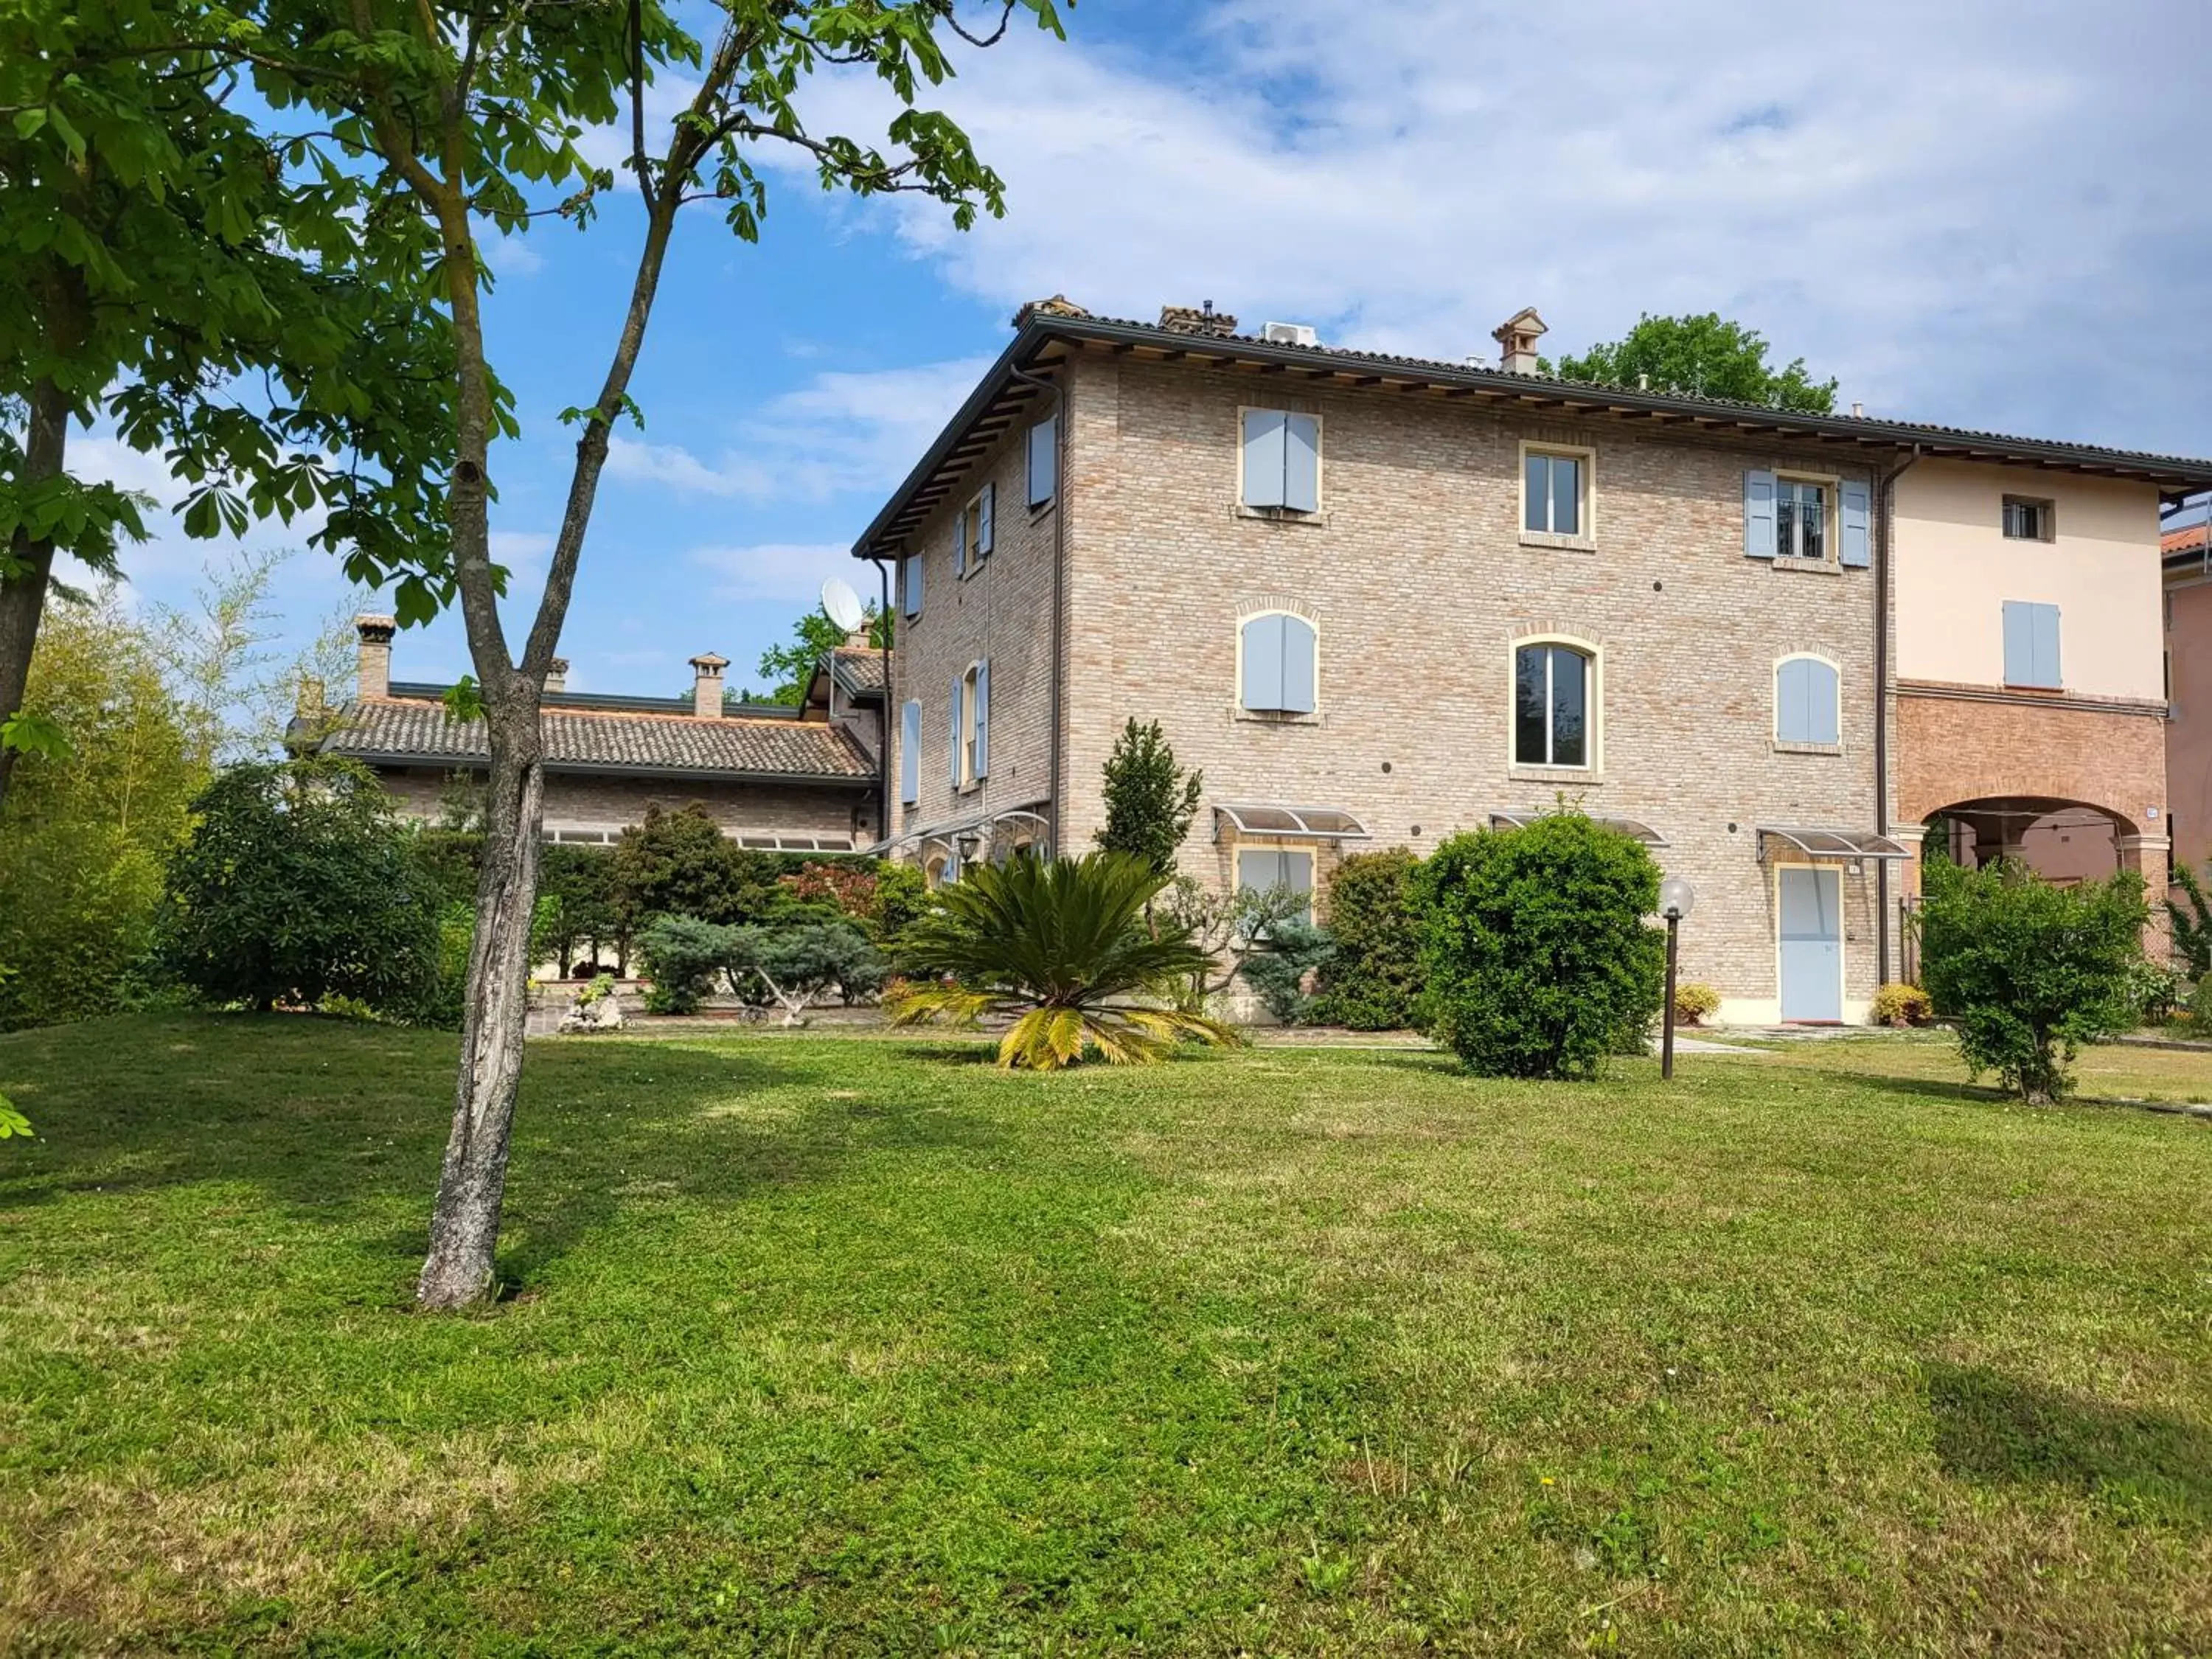 Property Building in Residence Antico Borgo